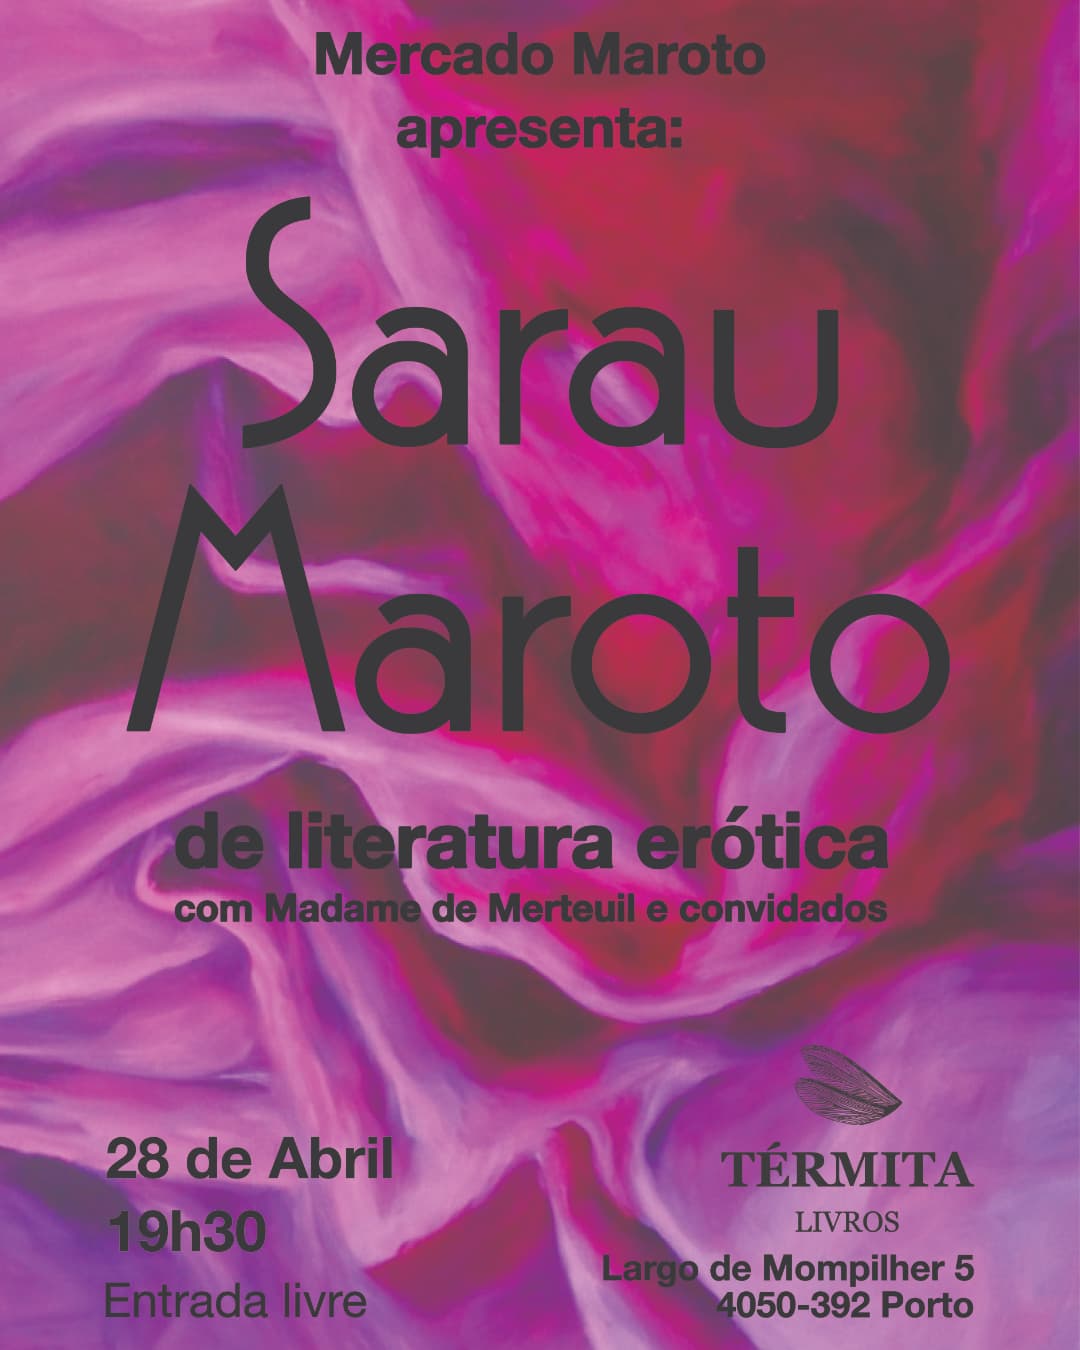 Sarau Maroto (de literatura erótica)